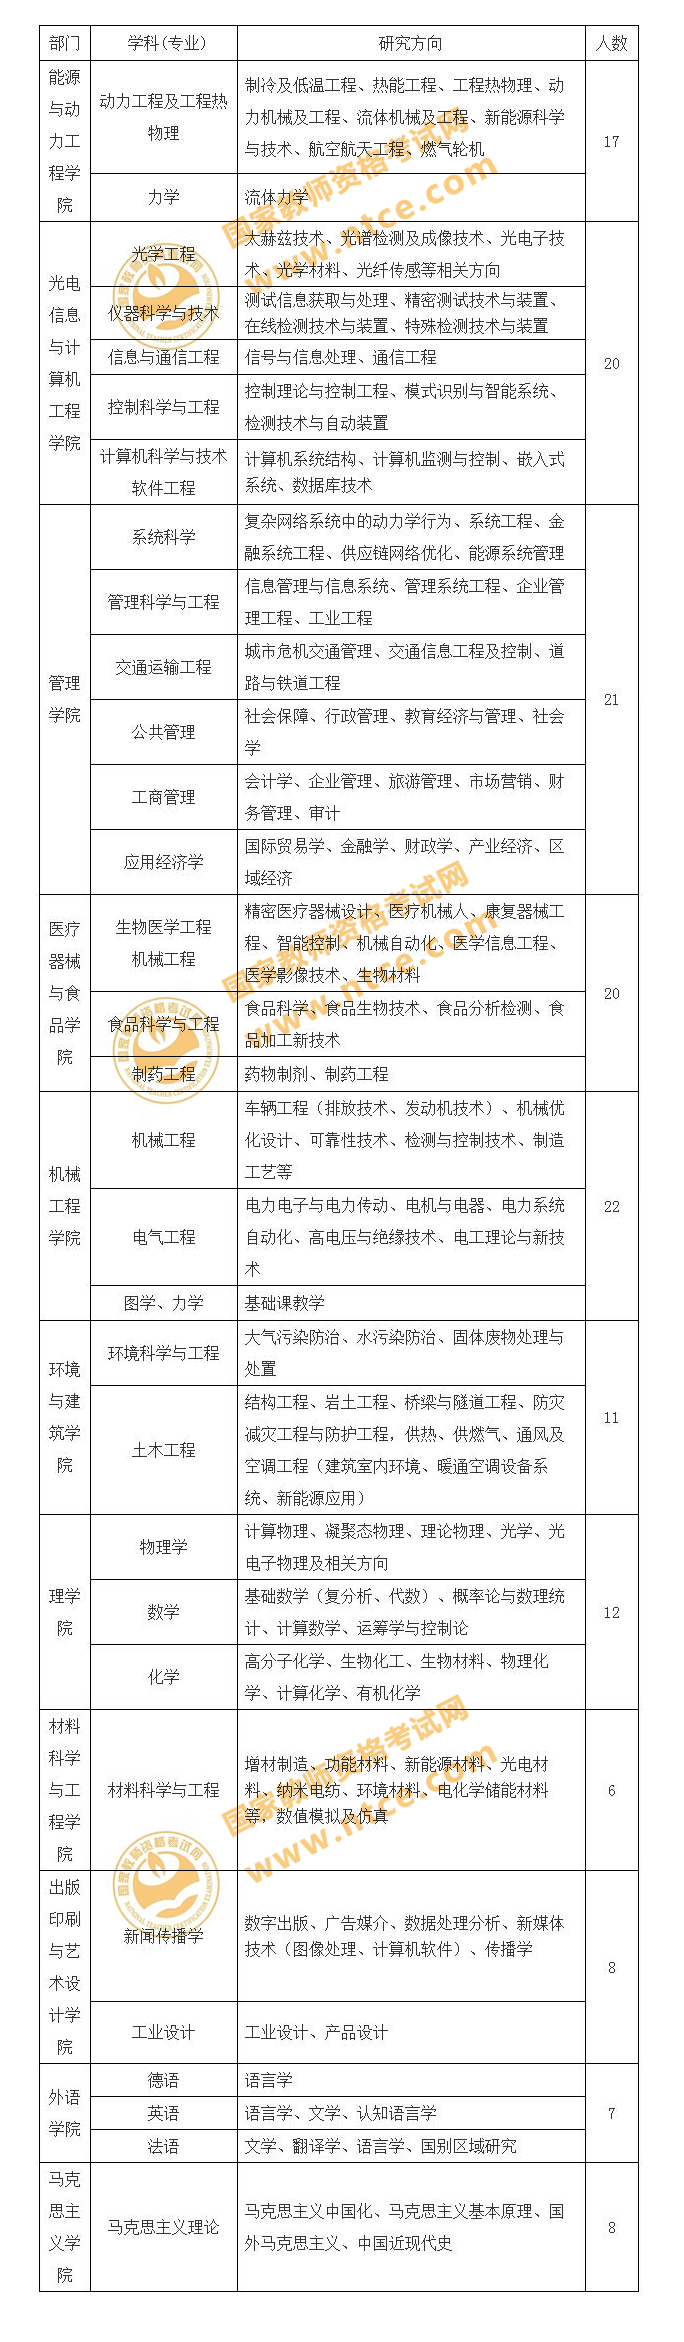 上海2019年理工大学师资招聘152人公告